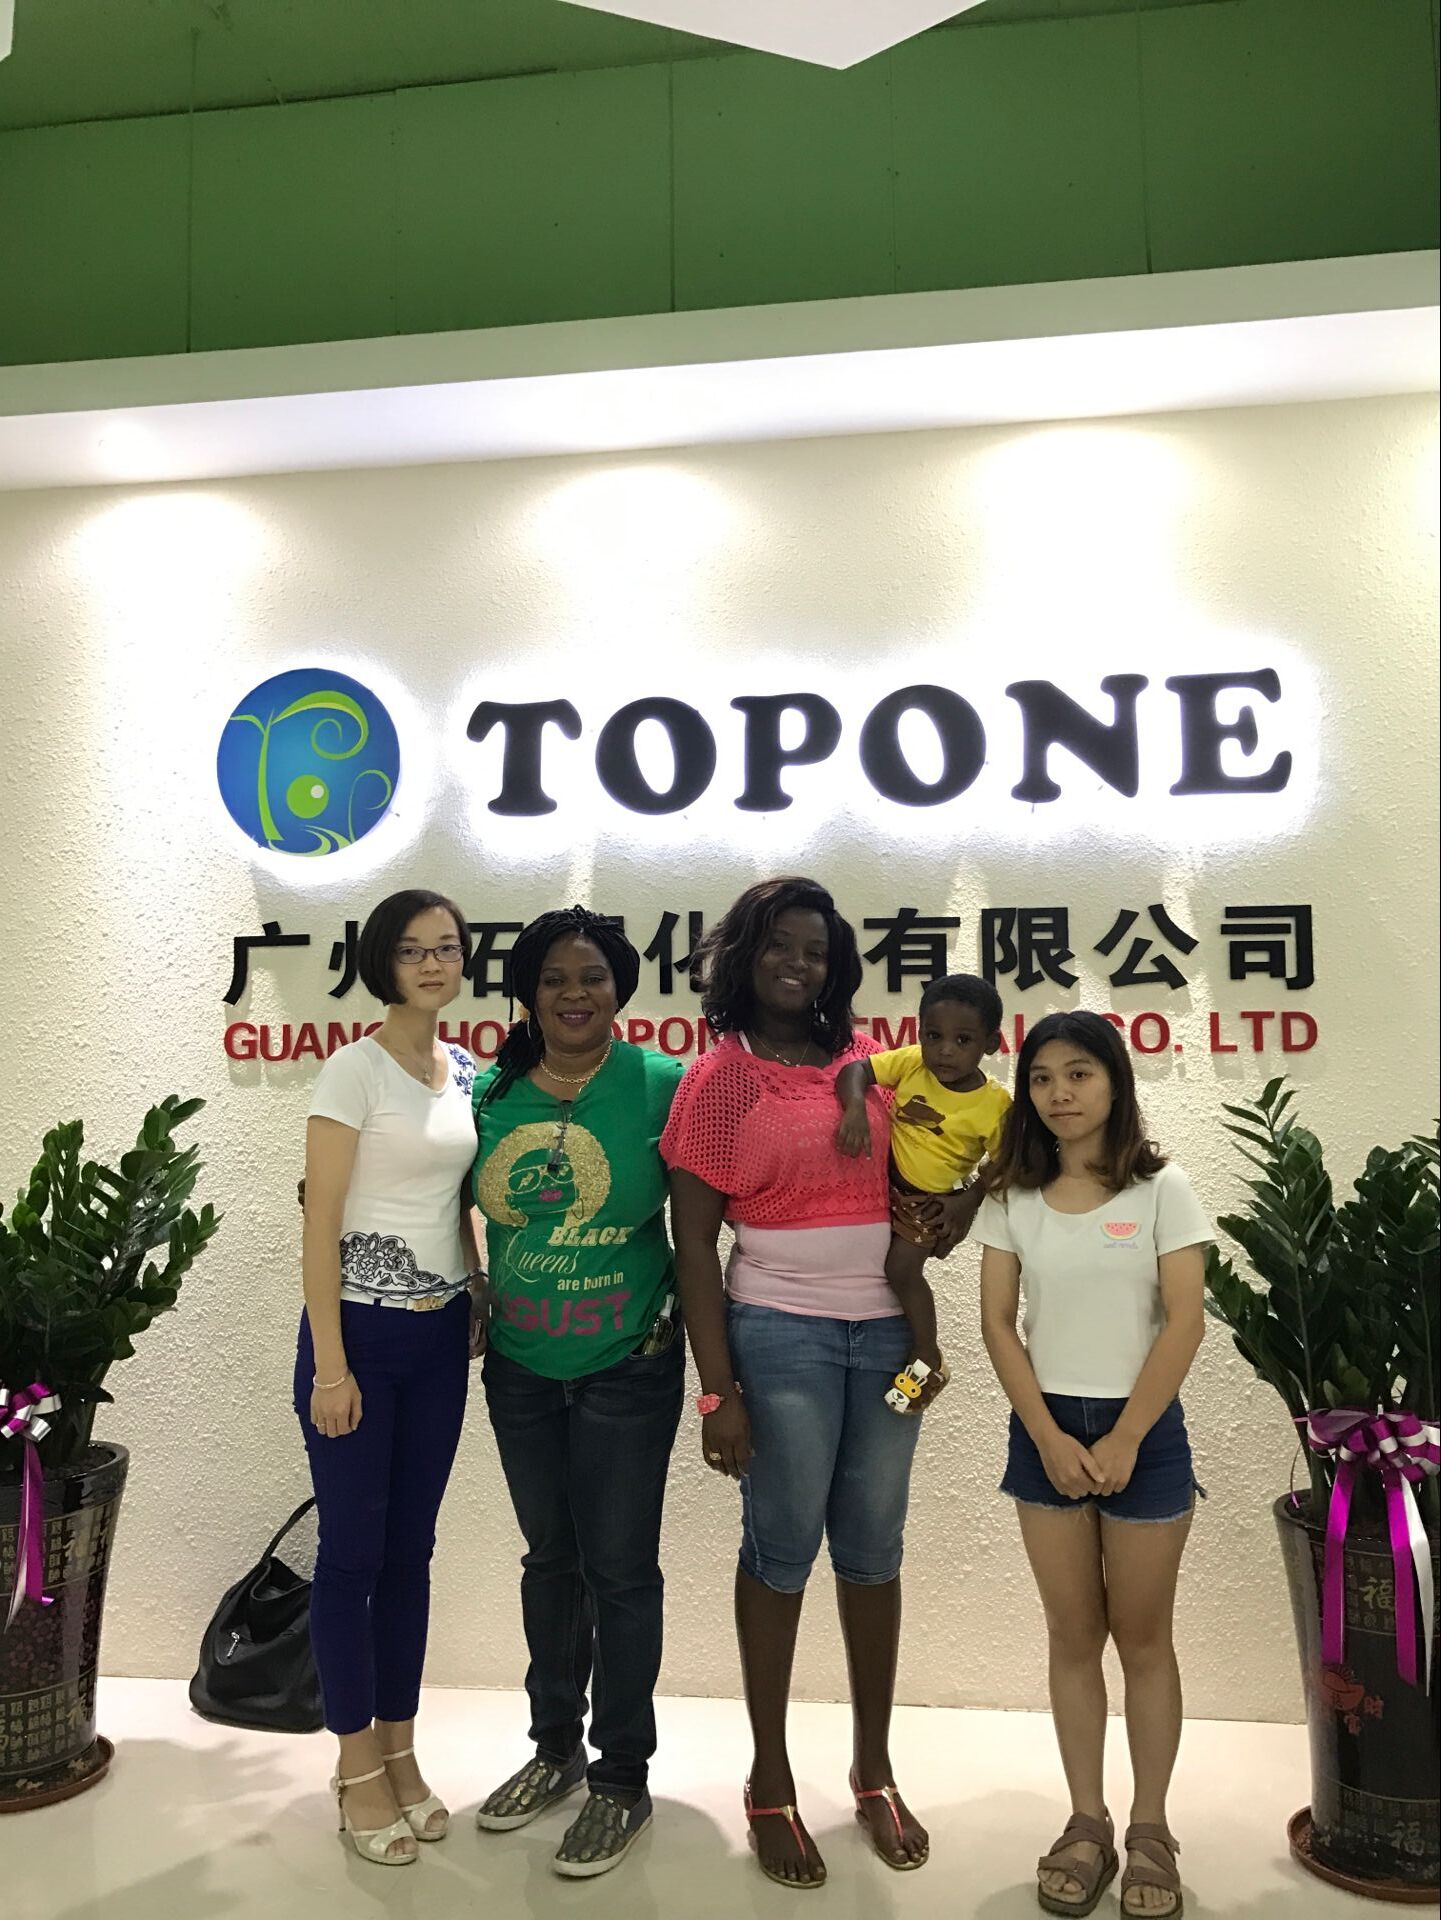 Bienvenue aux clients du Ghana Visitez la société Topone ---TOPONE NEWS